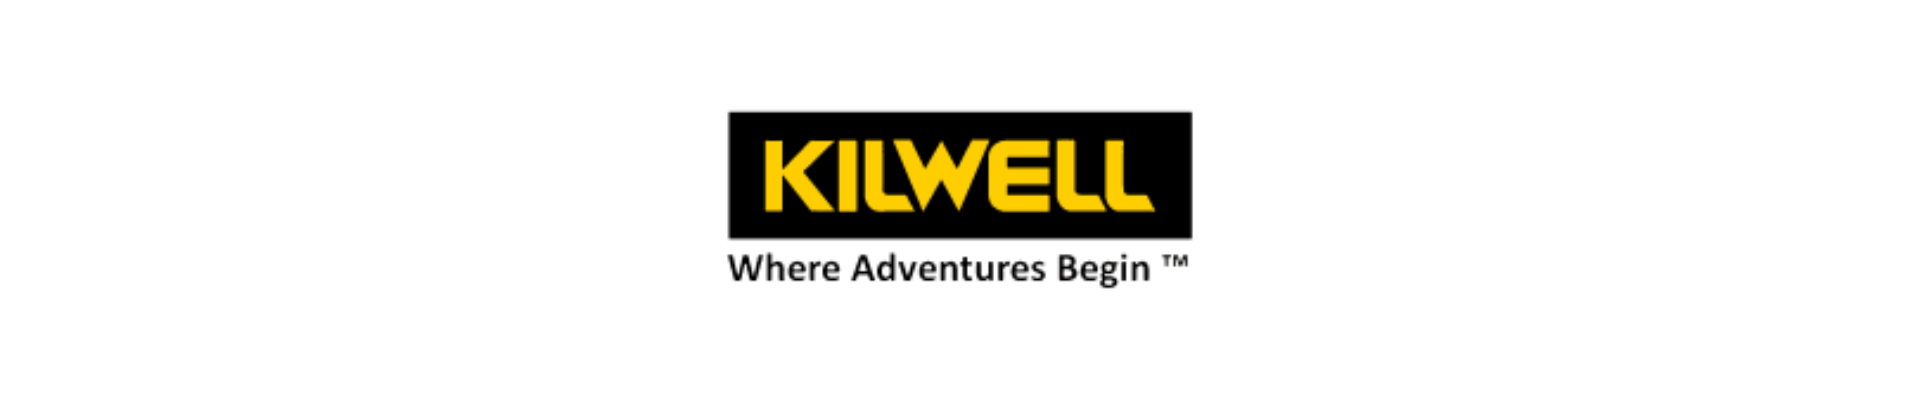 Kilwell